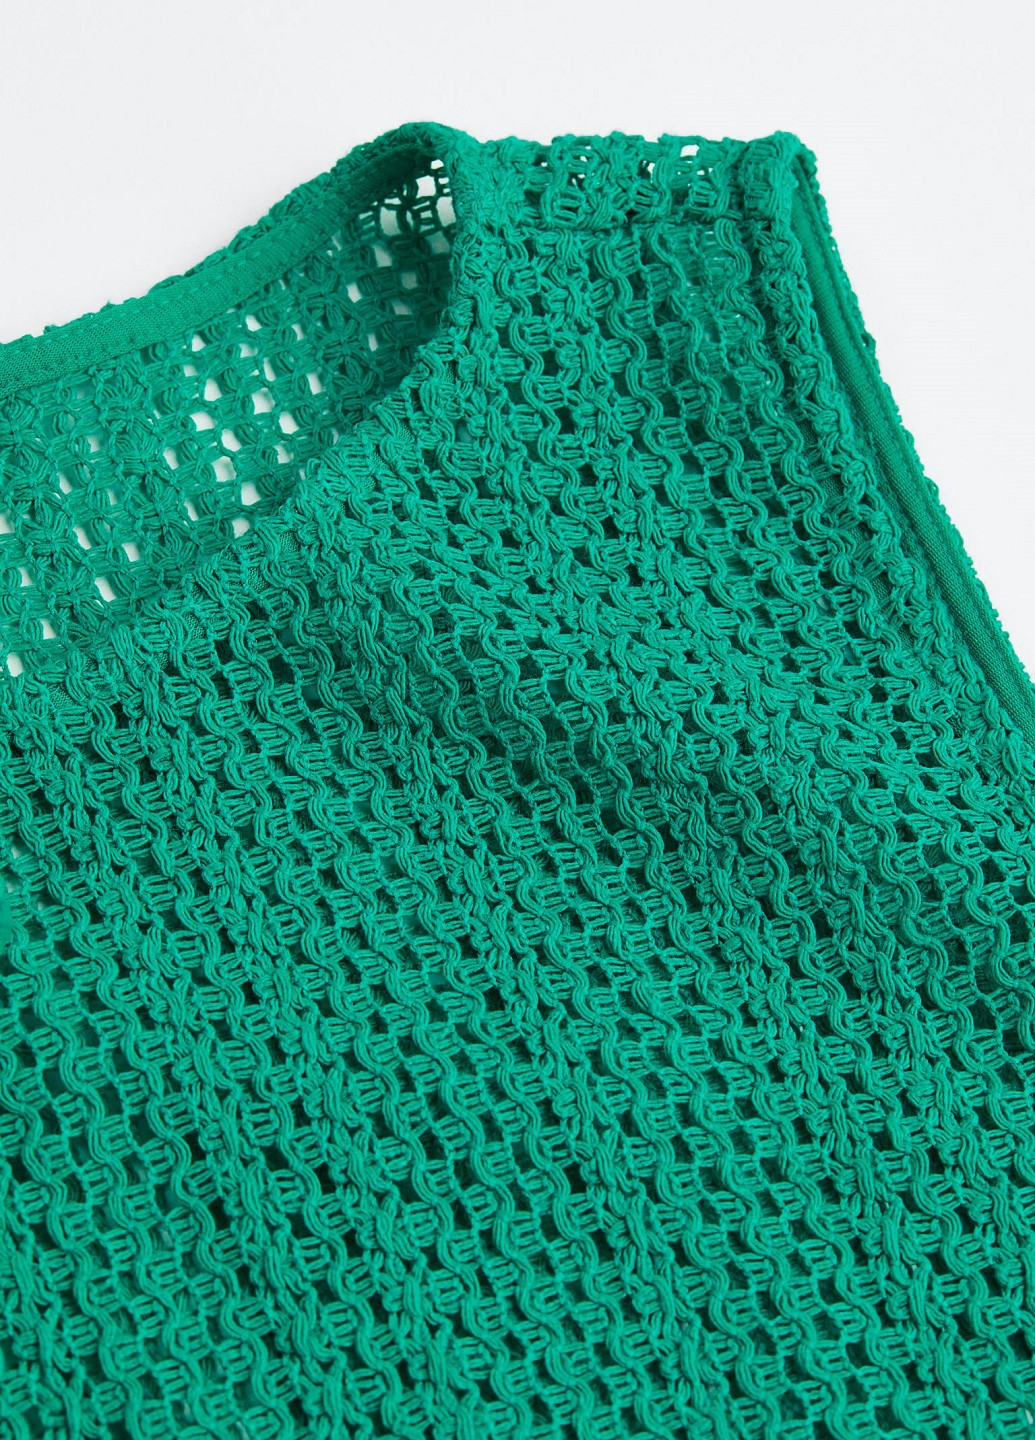 Зеленое пляжное платье H&M однотонное